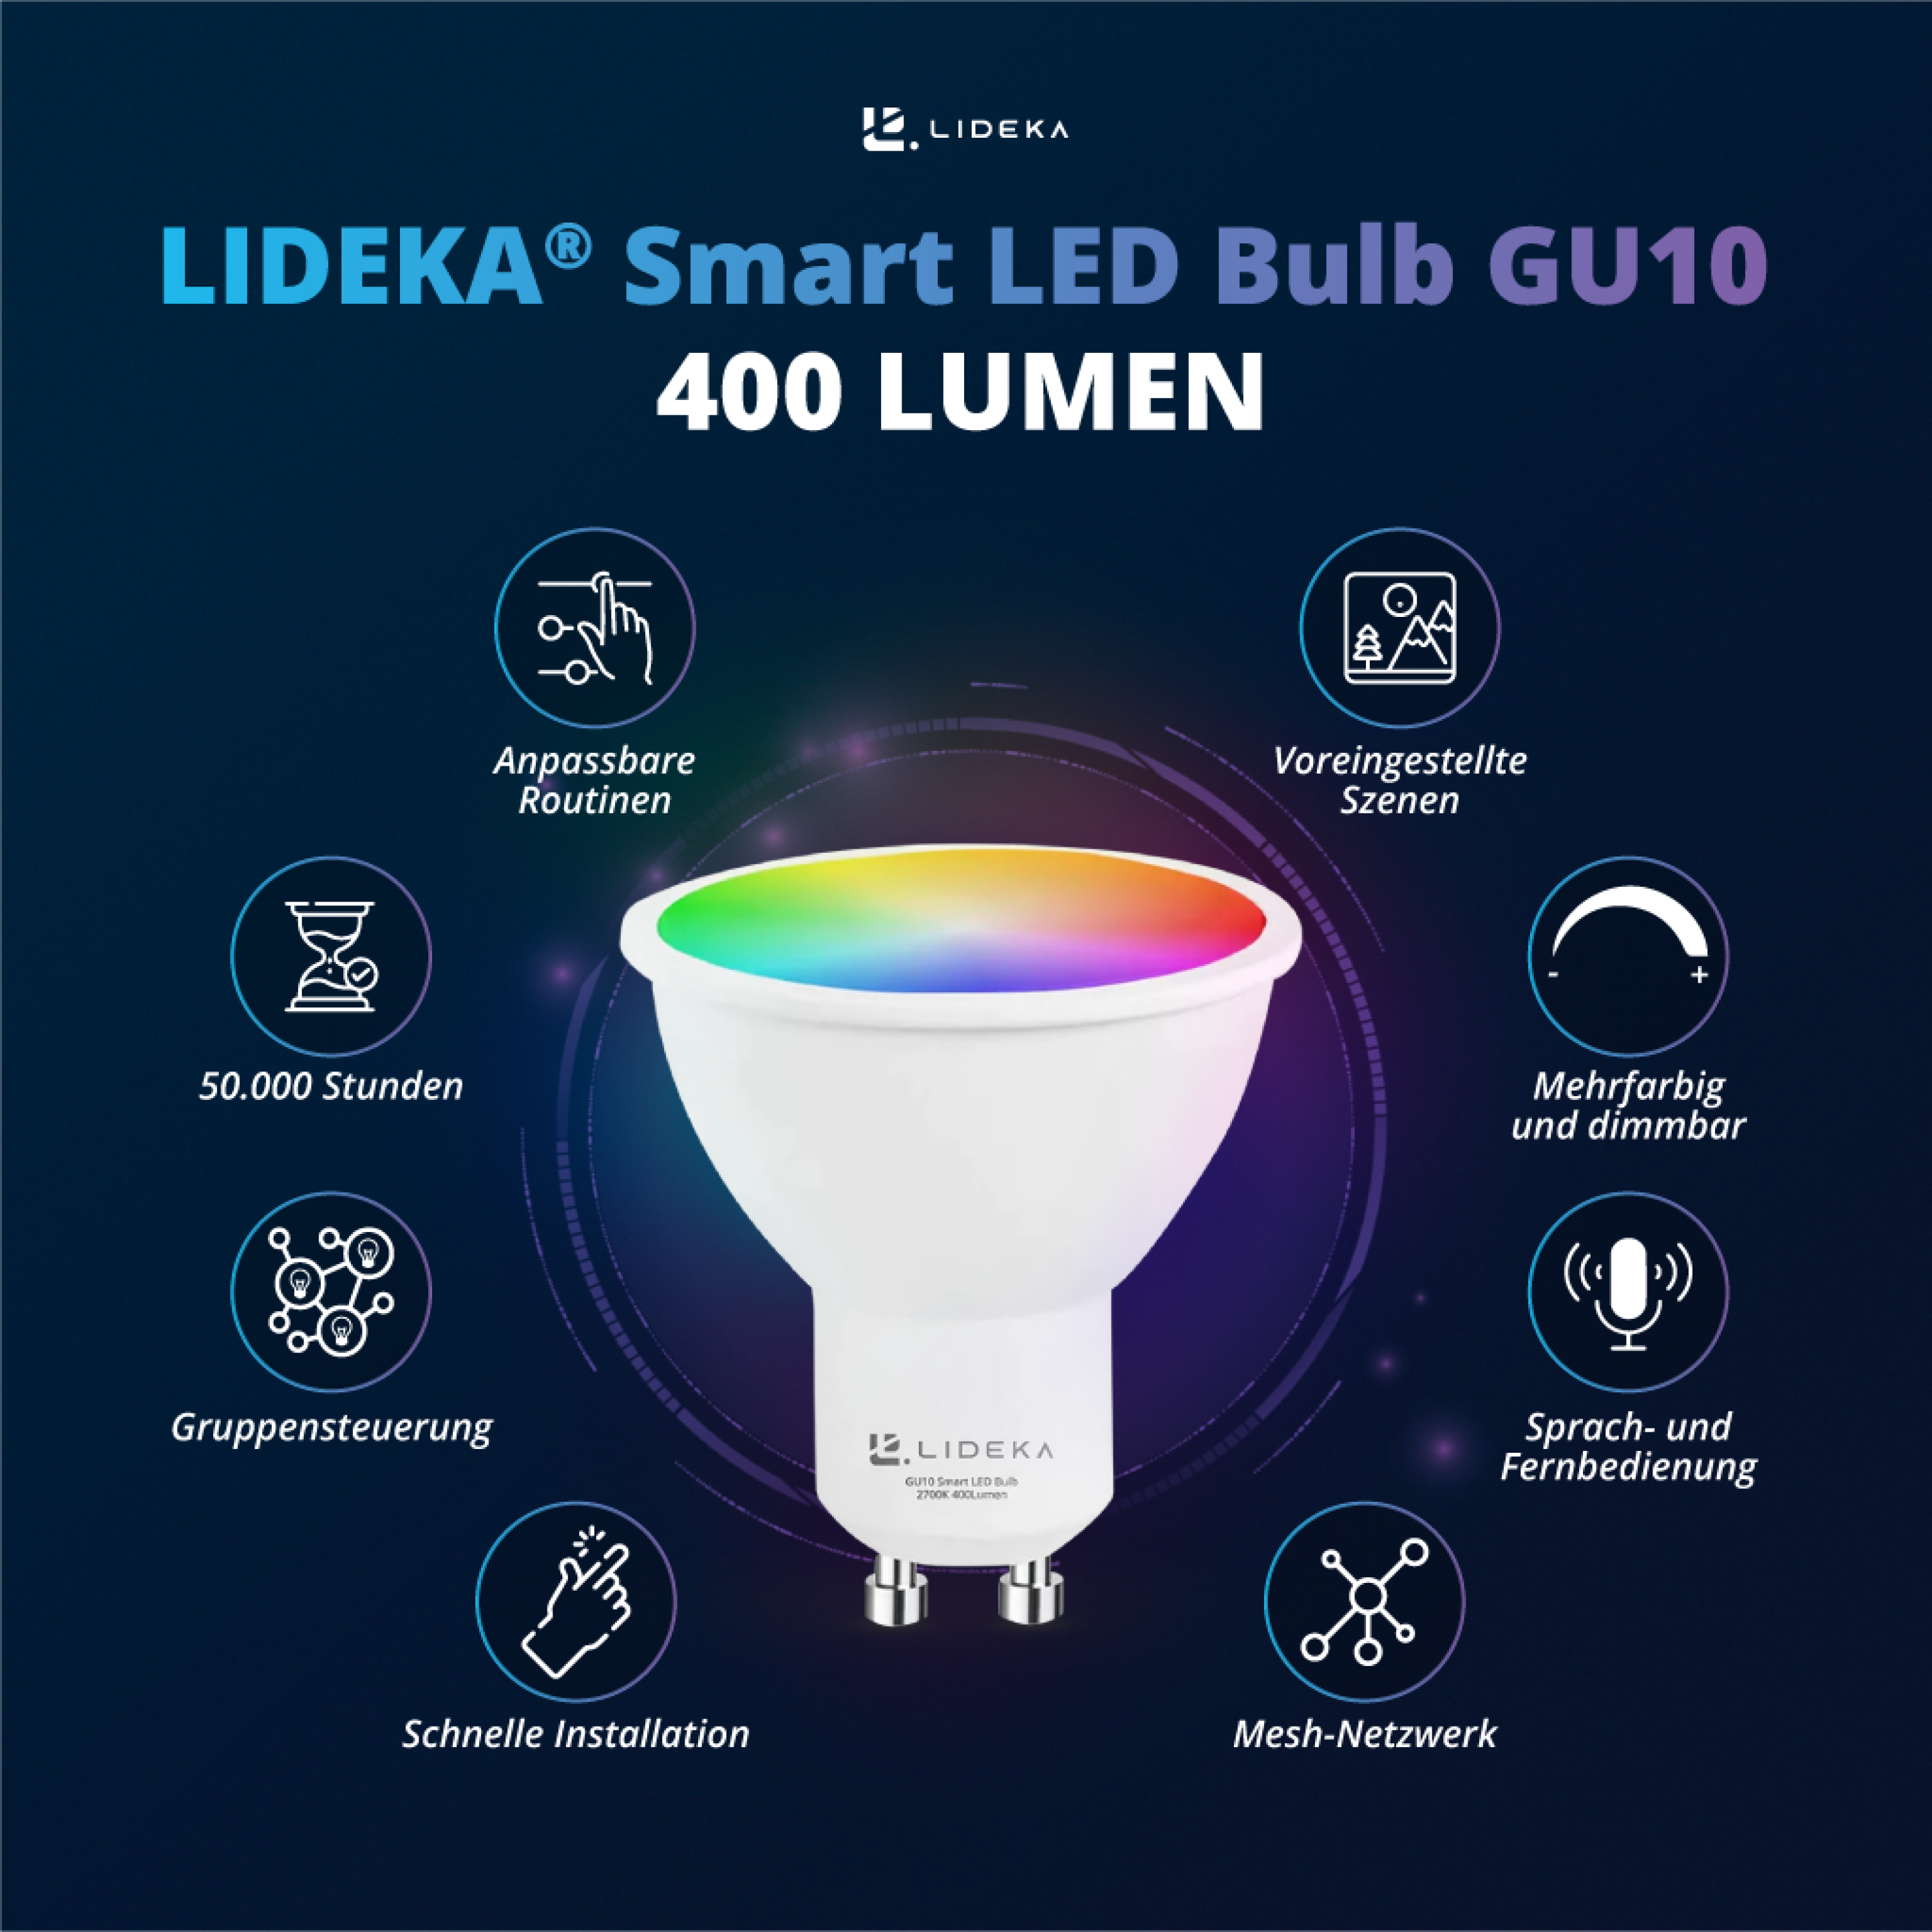 LIDEKA GU10 LED Spot Lampen 9 Dimmbar RGB LED-Leuchtmittel 5W Watt GU10 Multicolors